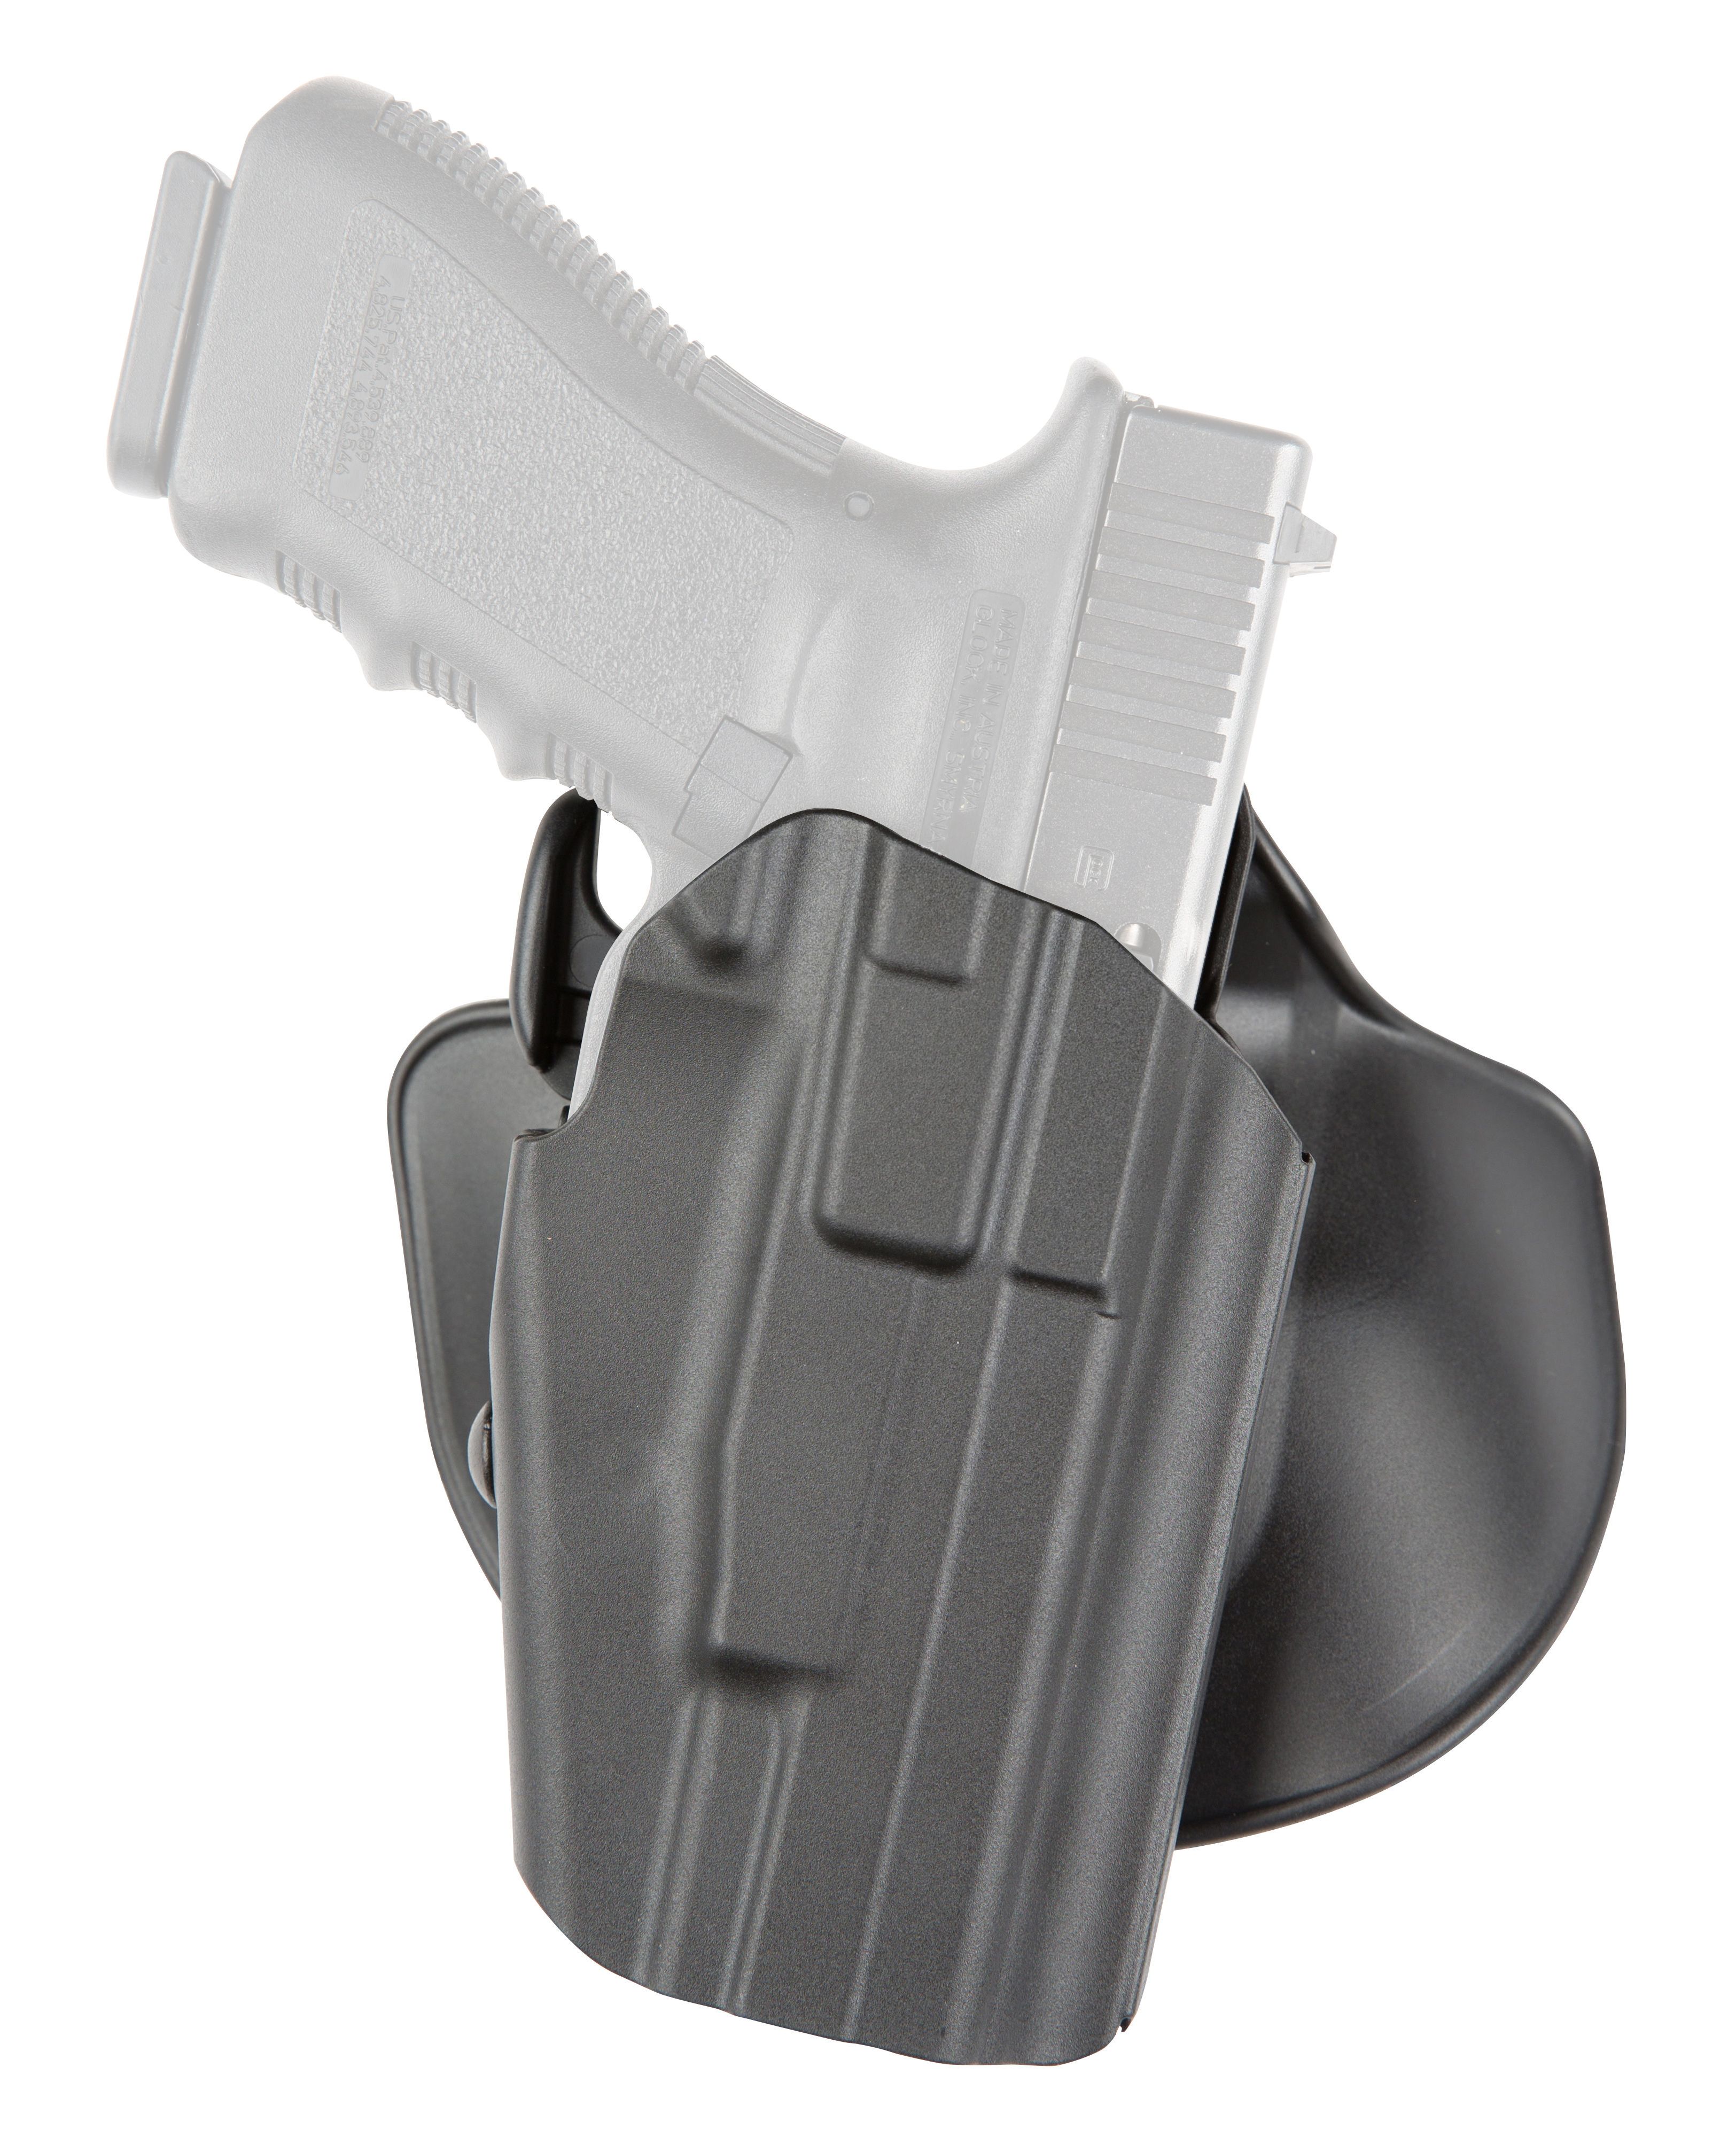 Safariland 578 GLS Pro-Fit Holster for Glock 19/23/38 Black RH - 578-283-411